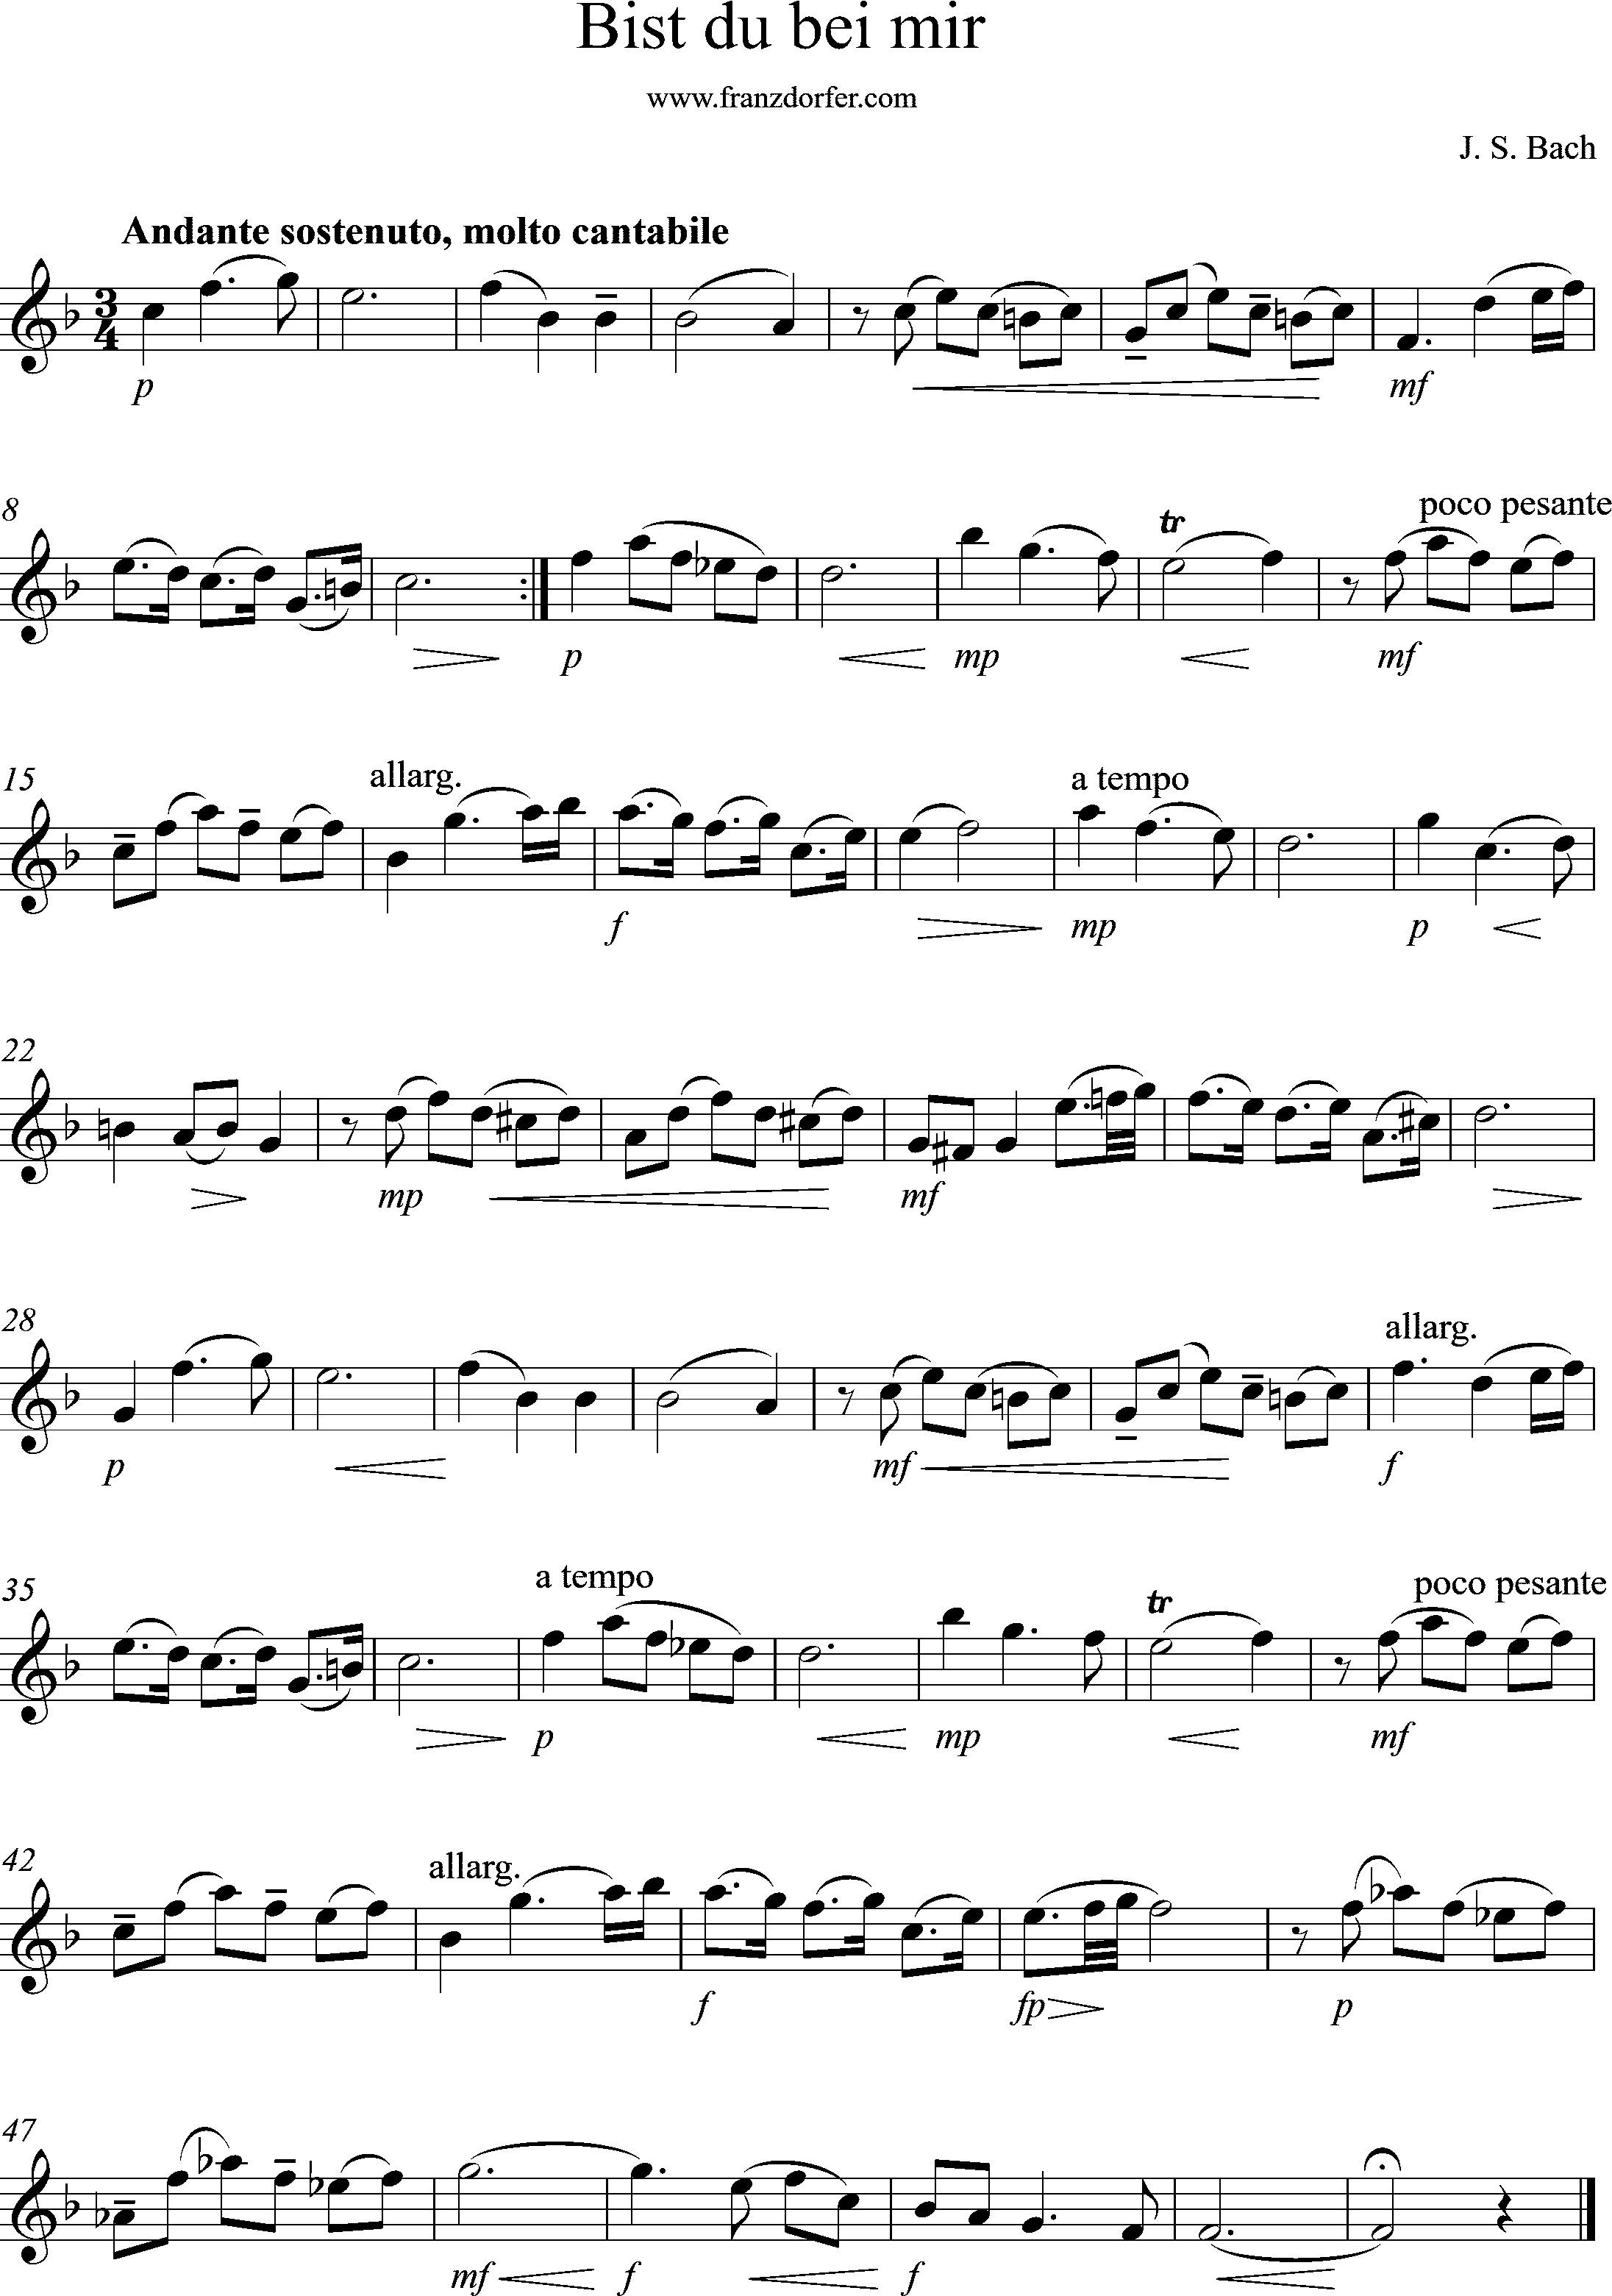 sheetmusic BWV508, Bach